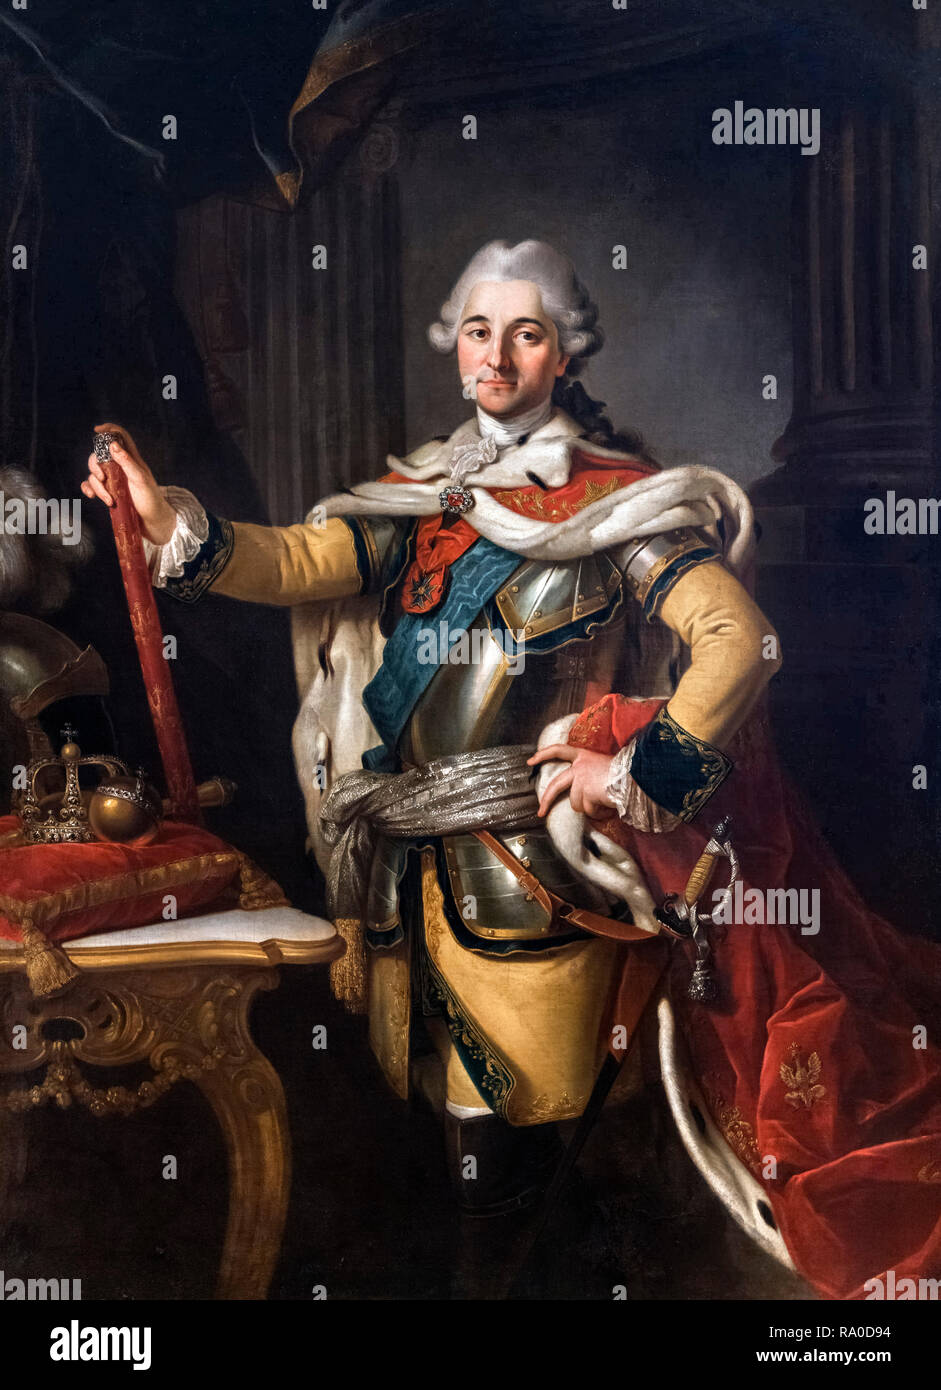 Ritratto di Stanisław August Poniatowski (1732-1798) da Per Krafft il Vecchio (1724-1793), olio su tela, c.1767. Stanislao II Augusto fu re di Polonia e granduca di Lituania dal 1764 al 1795, e fu l'ultimo monarca del Commonwealth Polish-Lithuanian. Foto Stock